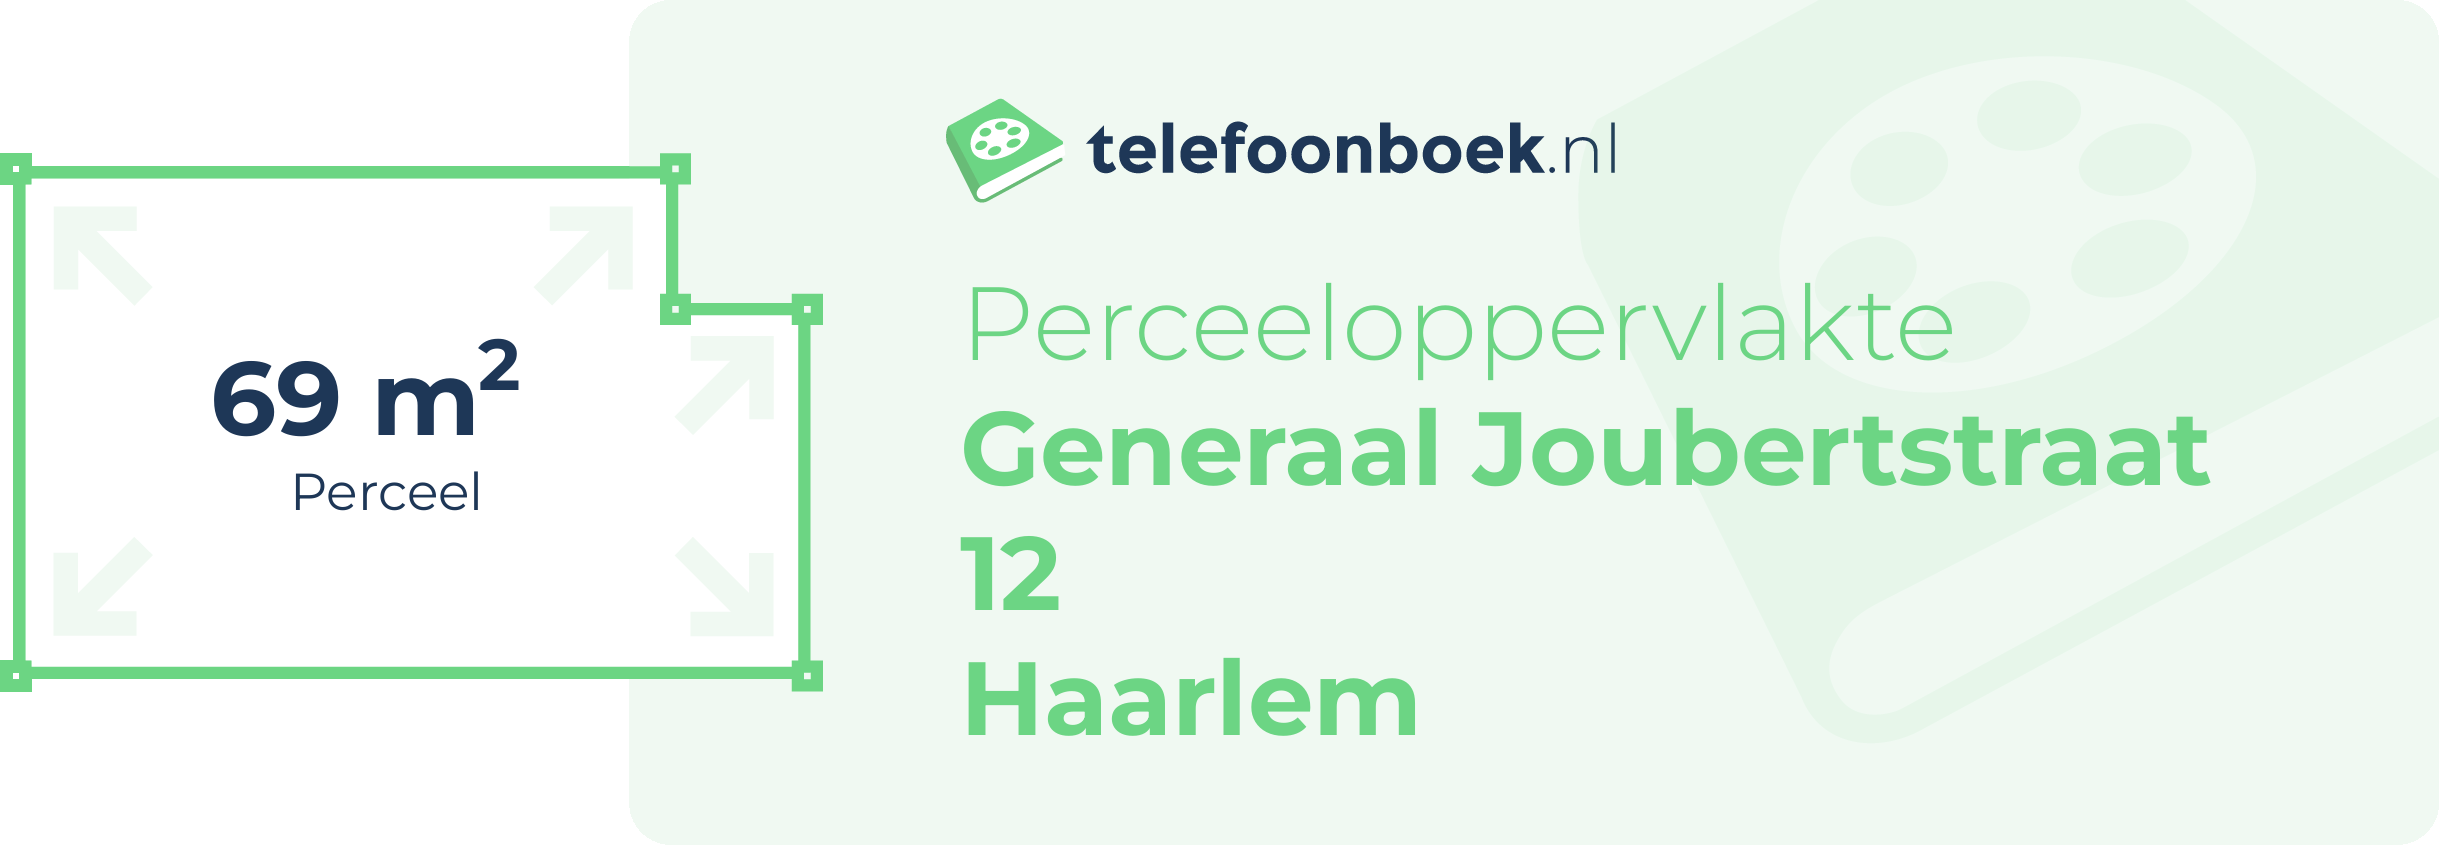 Perceeloppervlakte Generaal Joubertstraat 12 Haarlem